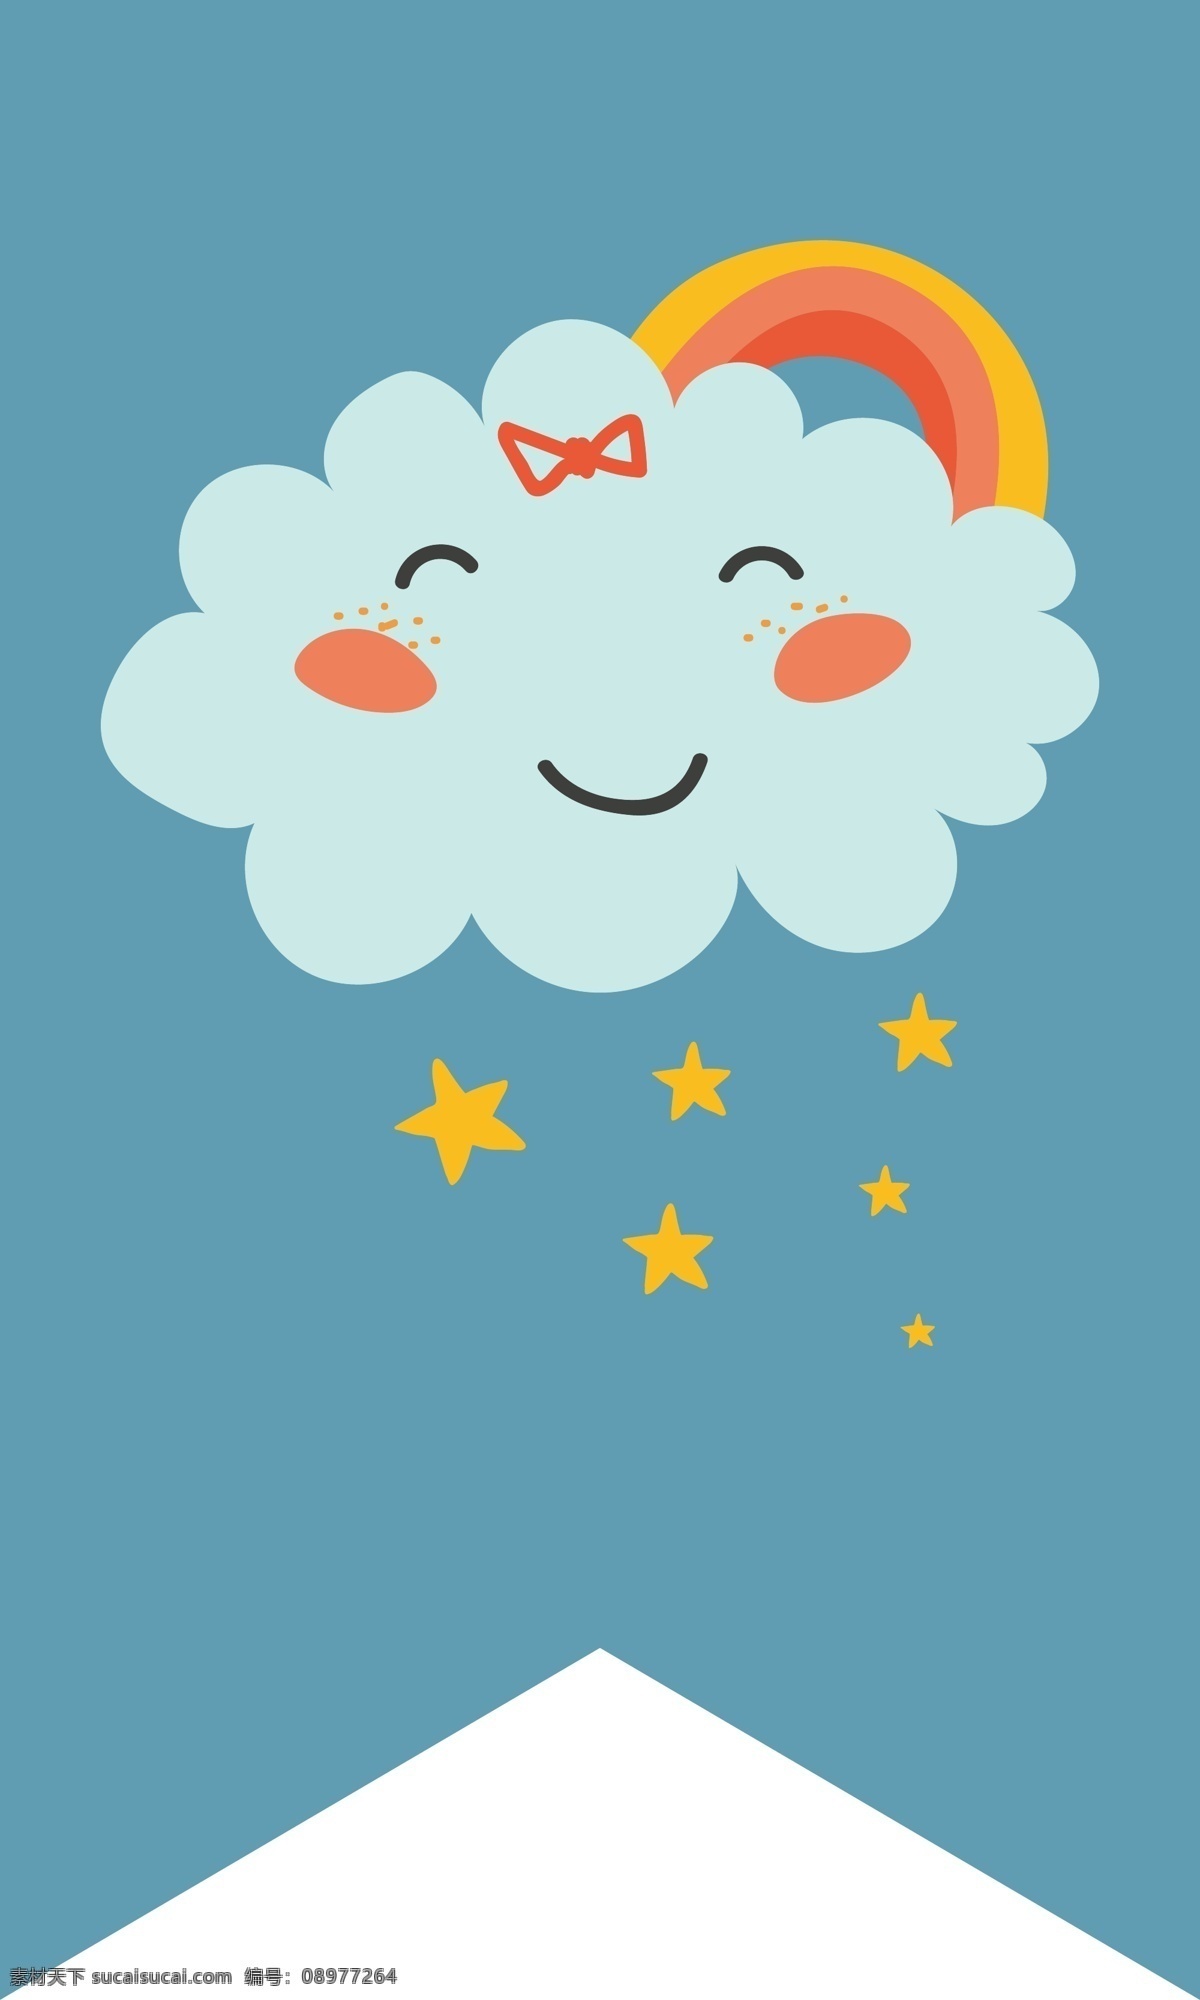 彩虹 云朵 标签 矢量 卡通 矢量素材 背景素材 微笑 设计素材